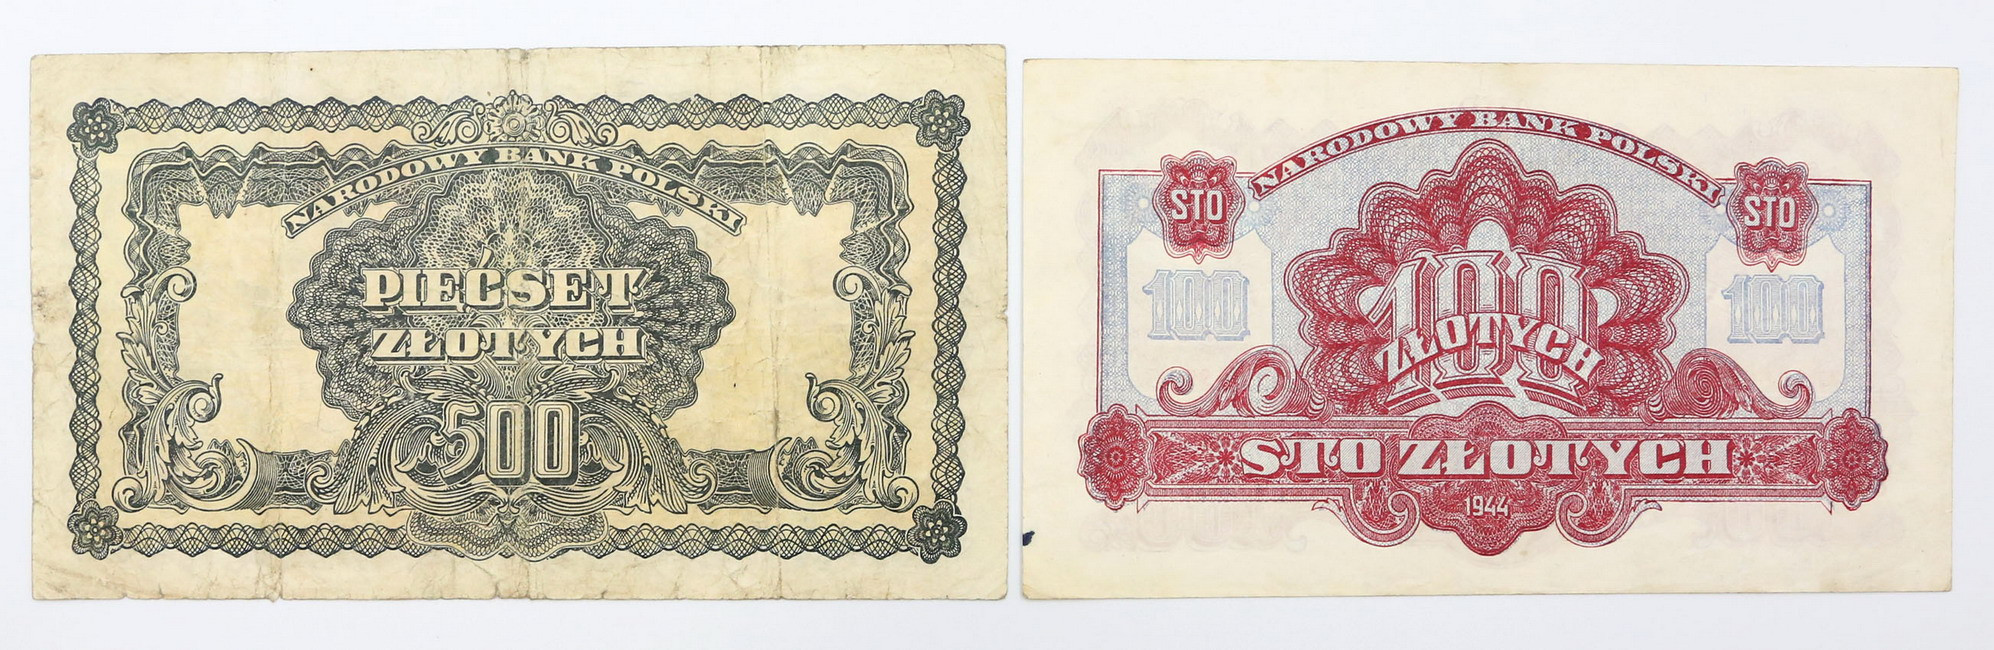 100, 500 złotych 1944, zestaw 2 banknotów